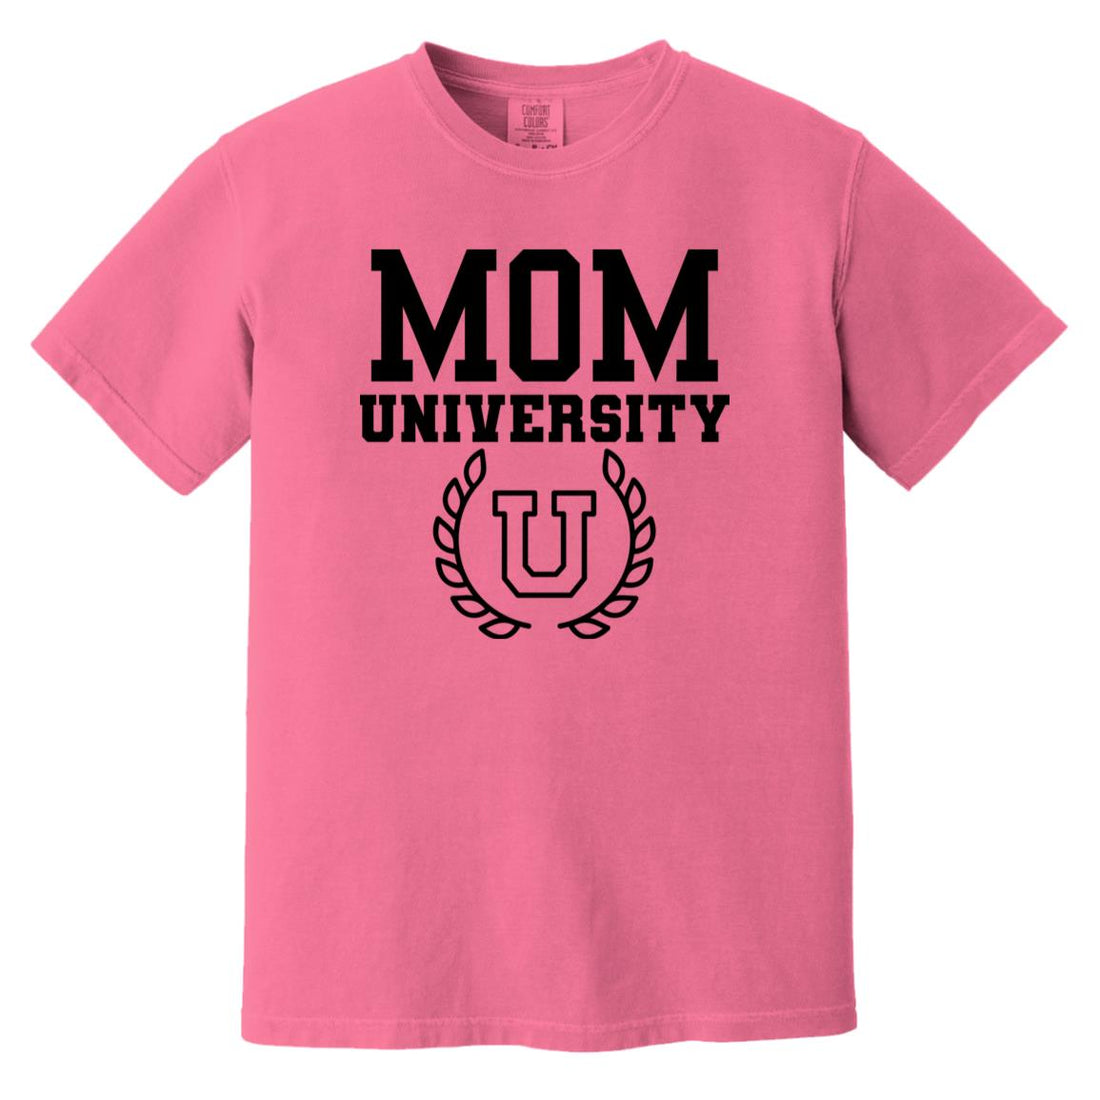 Mom University - T-Shirts - Positively Sassy - Mom University